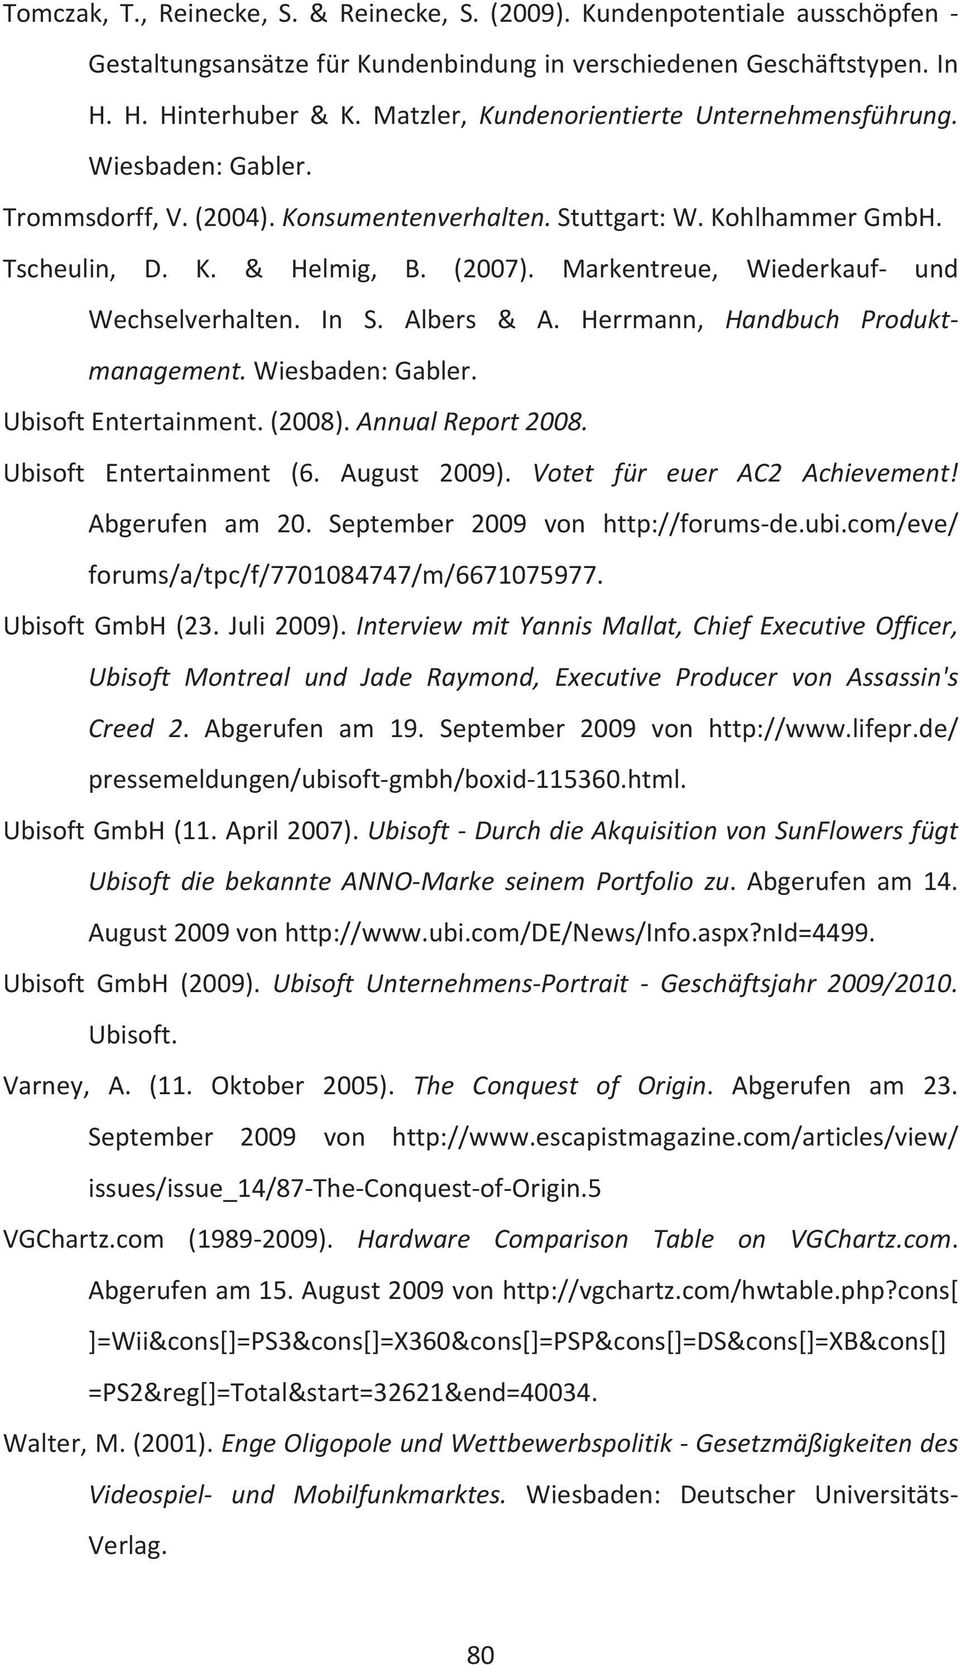 Markentreue, Wiederkauf- und Wechselverhalten. In S. Albers & A. Herrmann, Handbuch Produktmanagement. Ubisoft Entertainment. (2008). Annual Report 2008. Ubisoft Entertainment (6. August 2009).